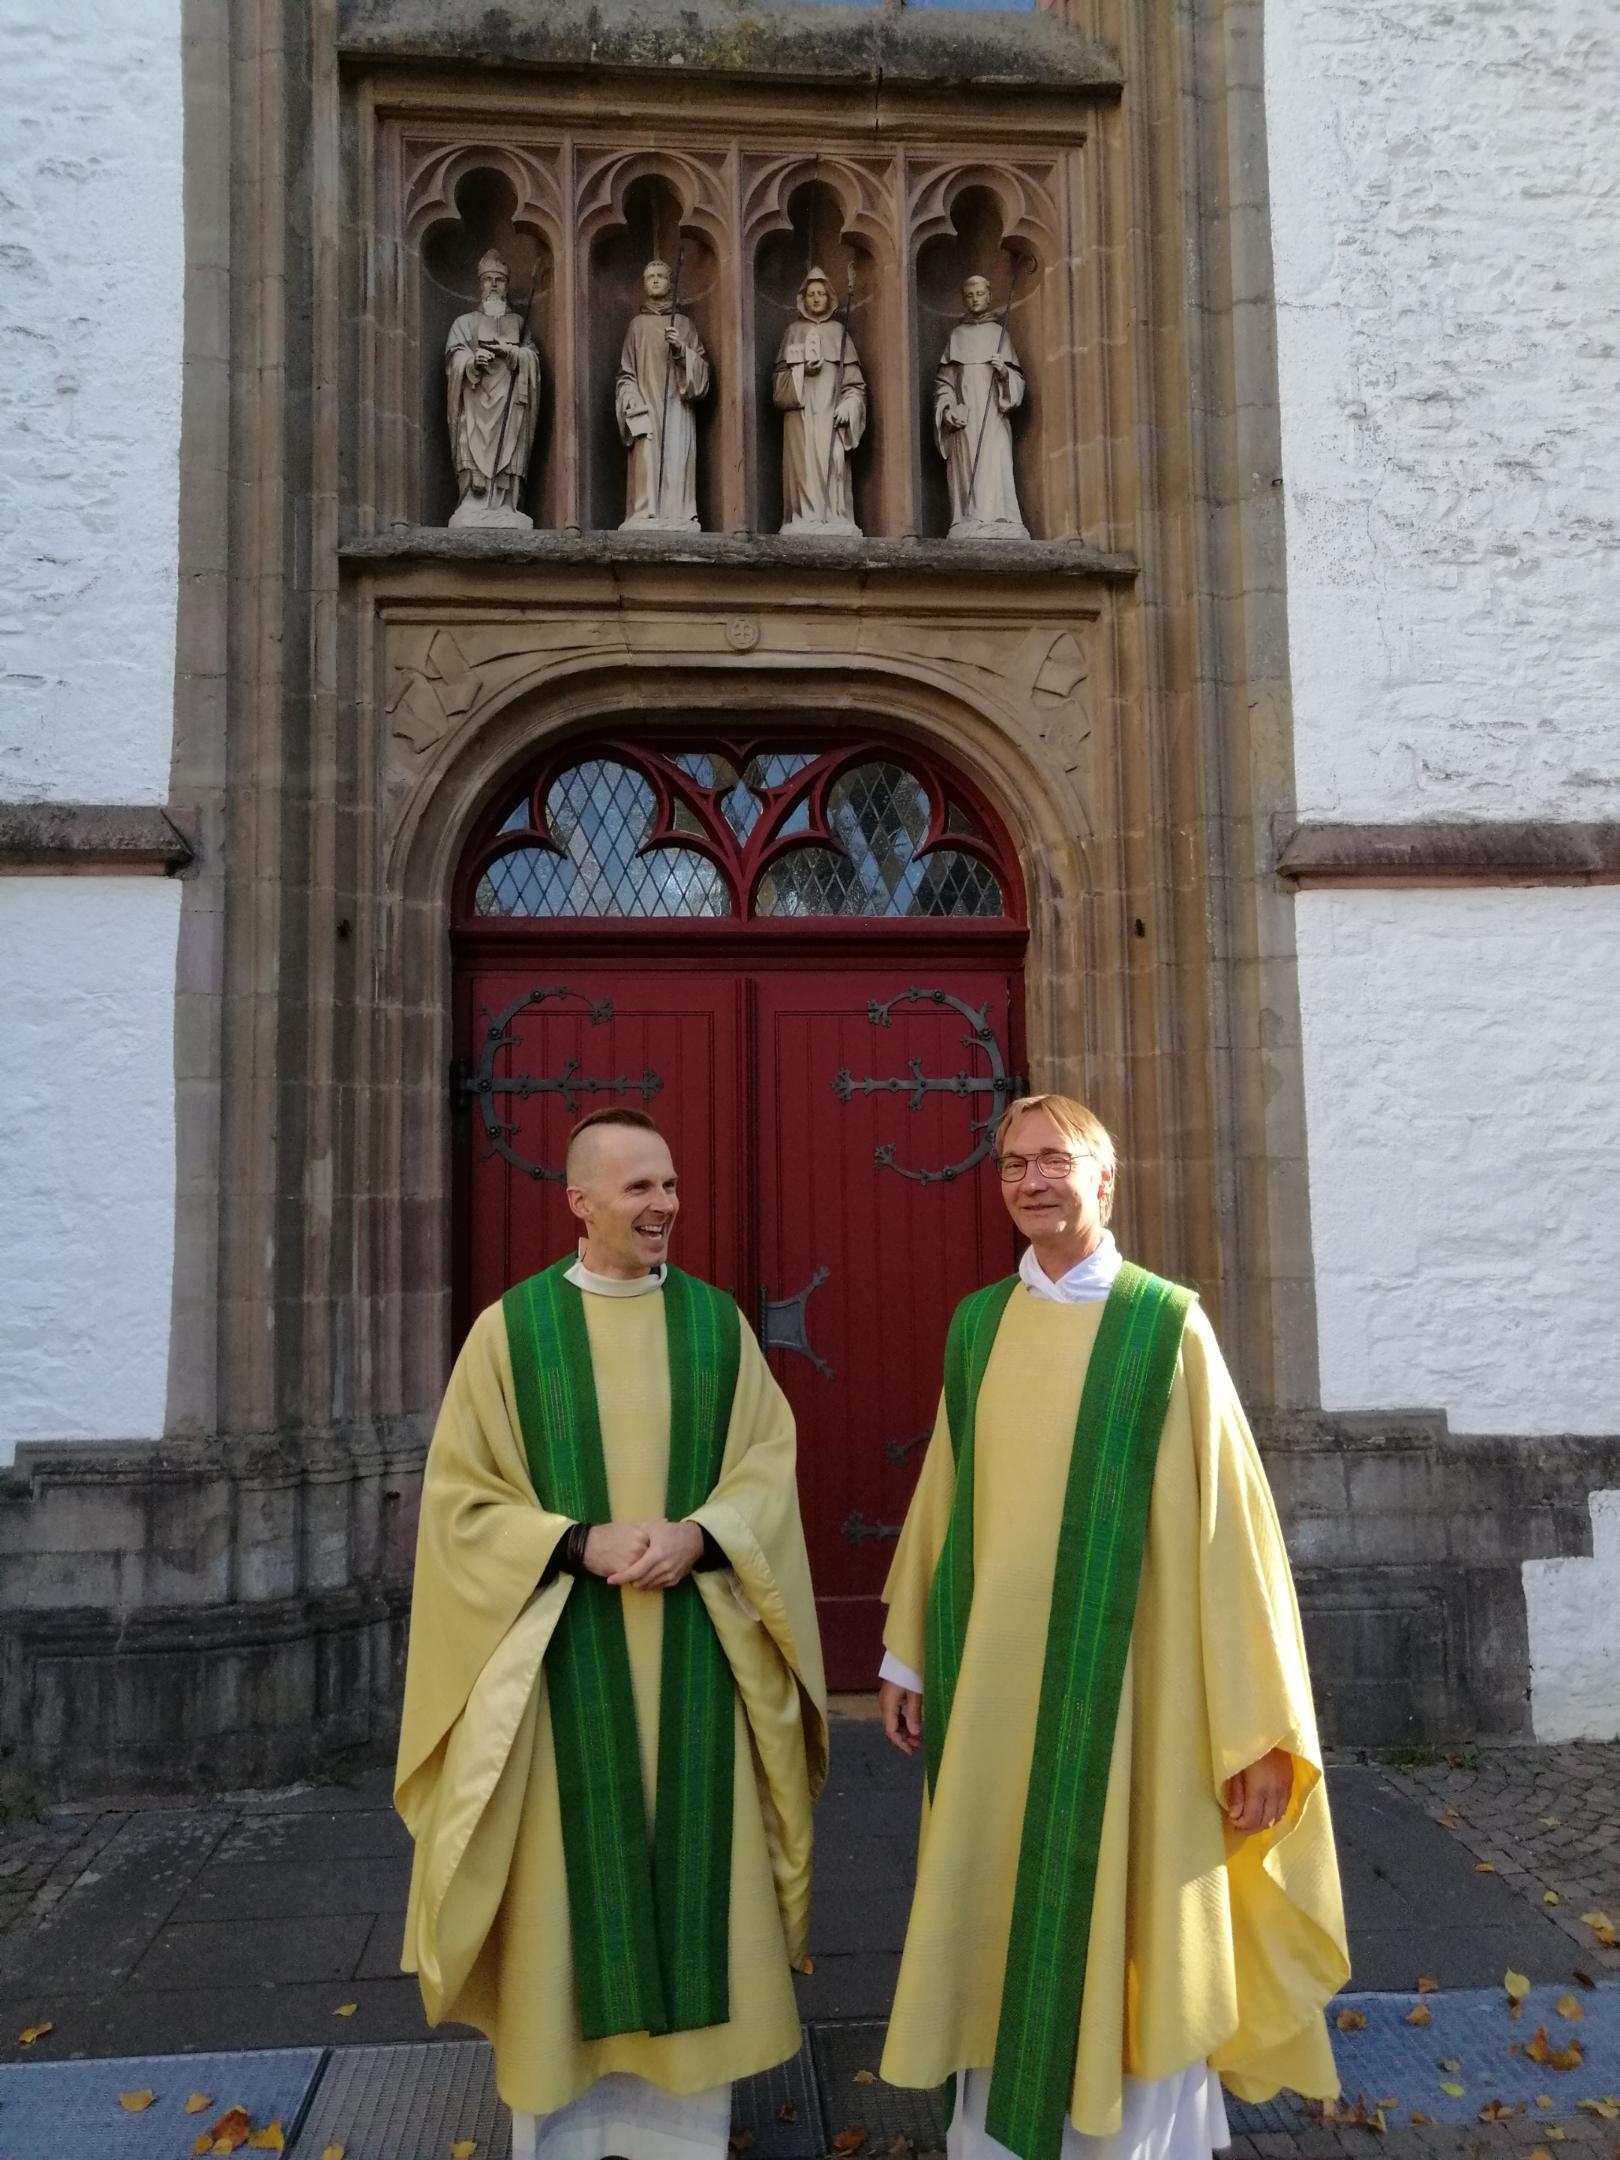 Andreas Rose (rechts) ist der neue Geistliche von Mariawald. Rektor Christian Blumenthal begrüßte ihn am Kirchenportal. (c) Mariawald GmbH & Co. KG